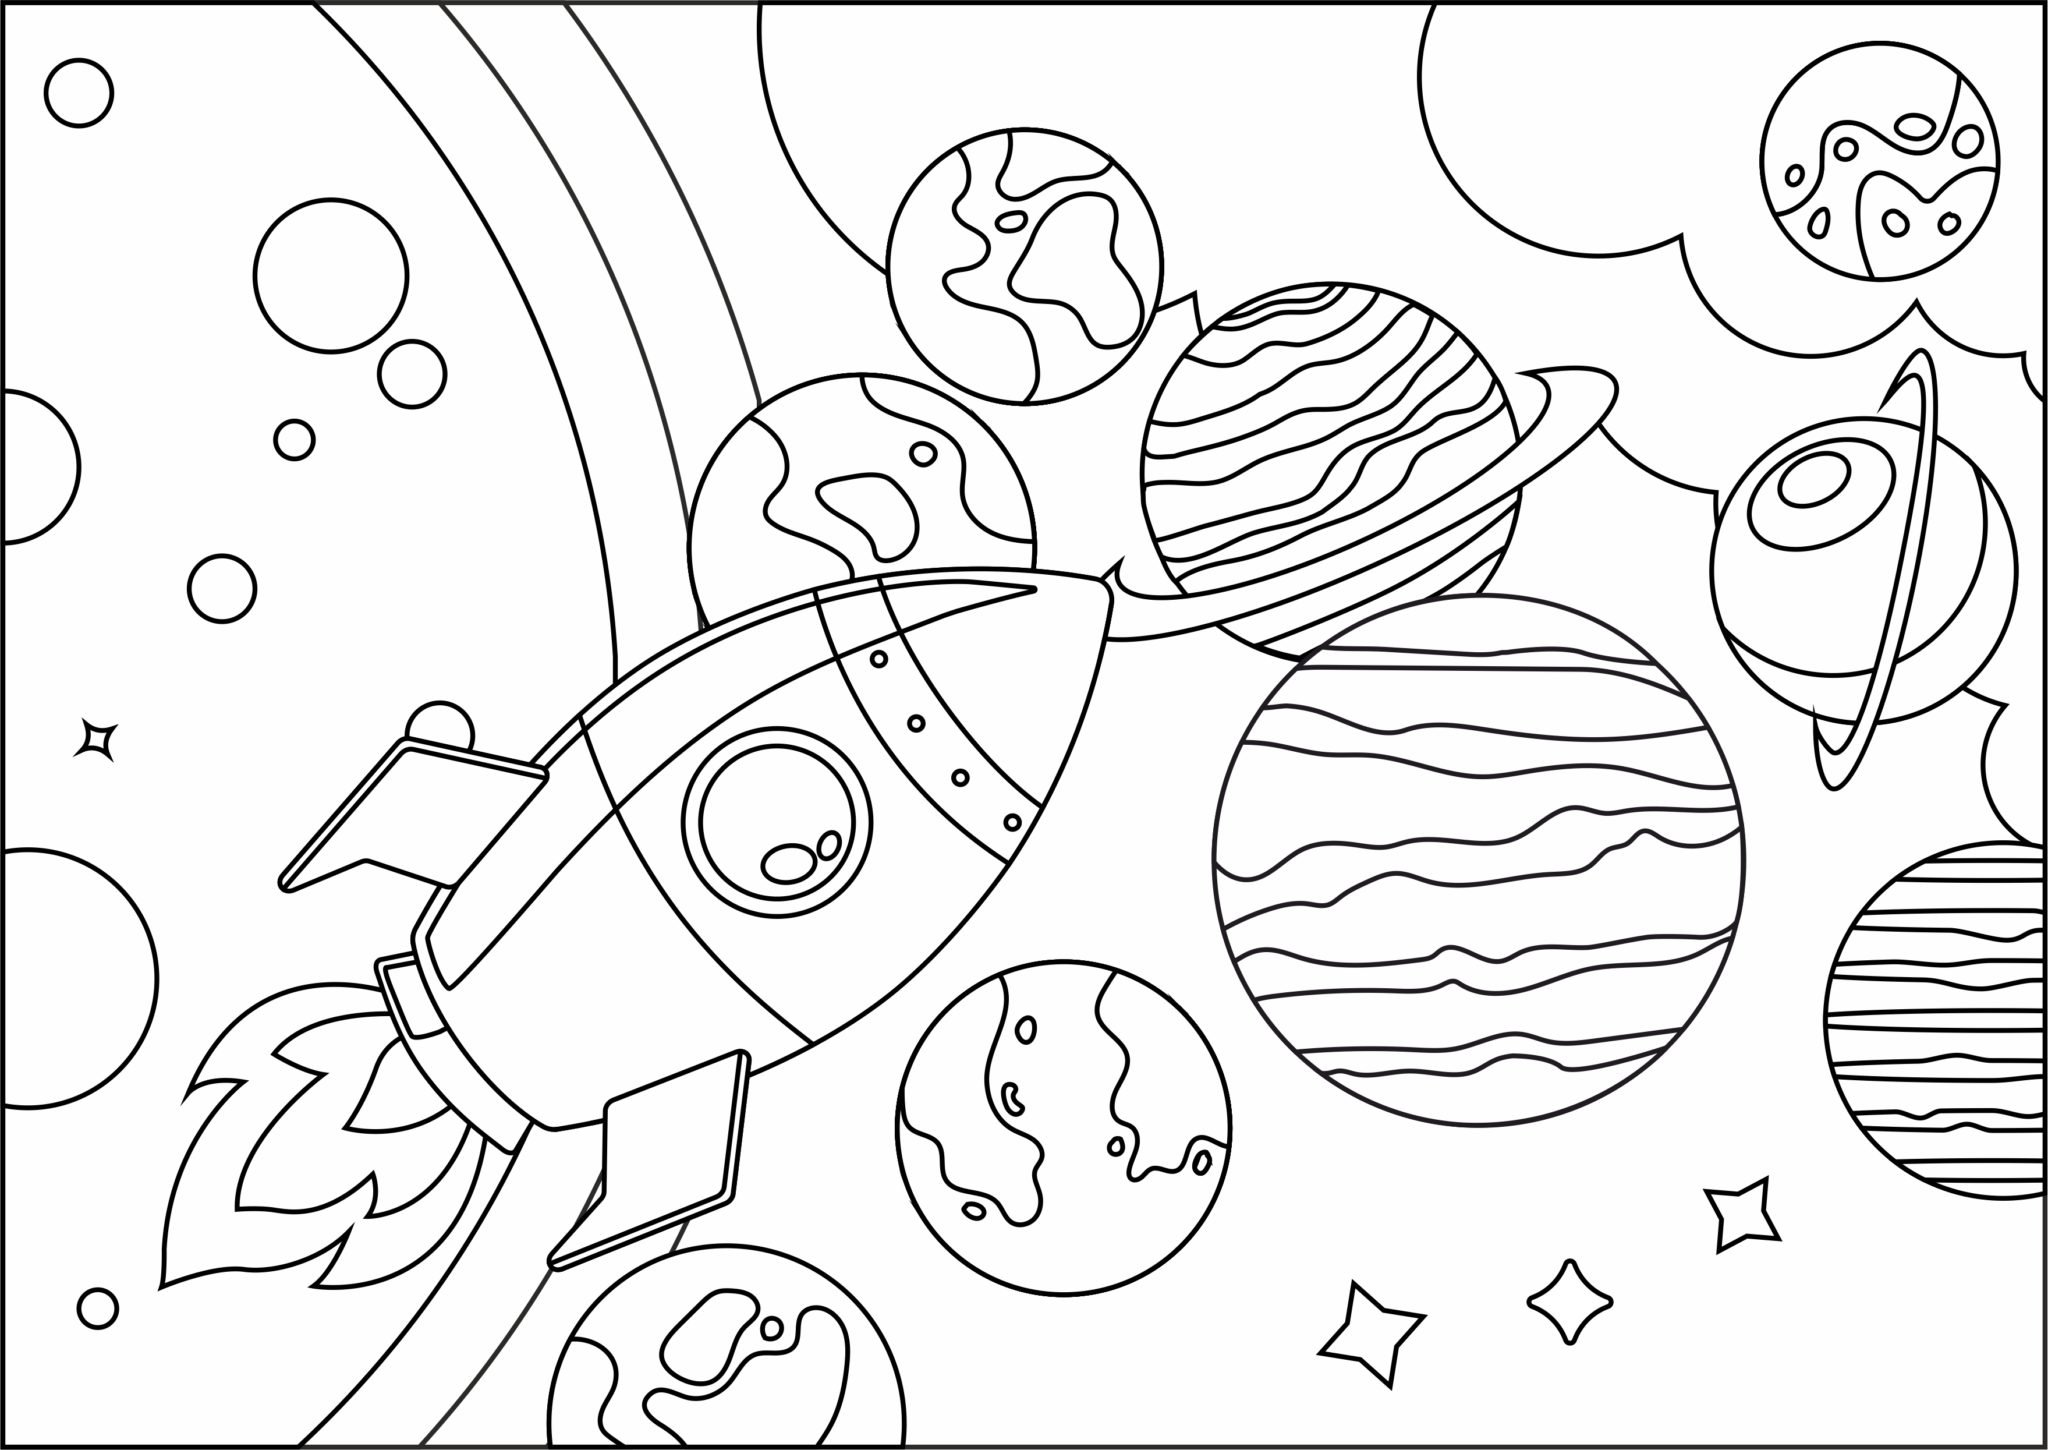 Рисунок на тему космос раскраска. Космос раскраска для детей. Раскраска космос и планеты. Солнечная система раскраска. Раскраска космос и планеты для детей.